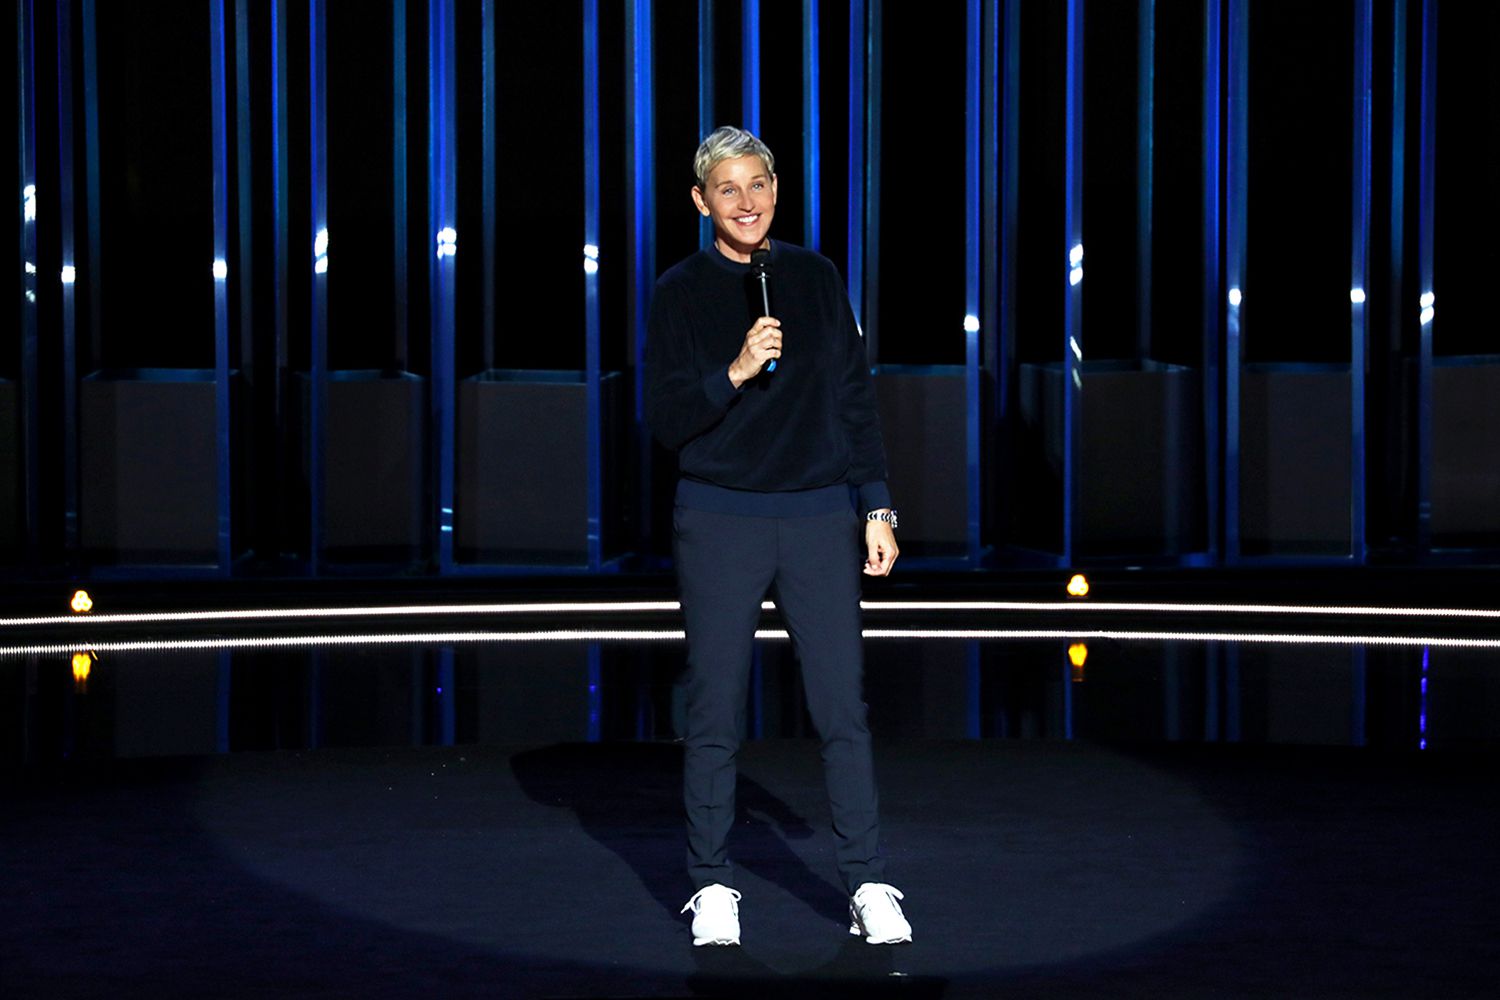 Ellen DeGeneres is "Relatable" in her debut Netflix original comedy special in 2018.